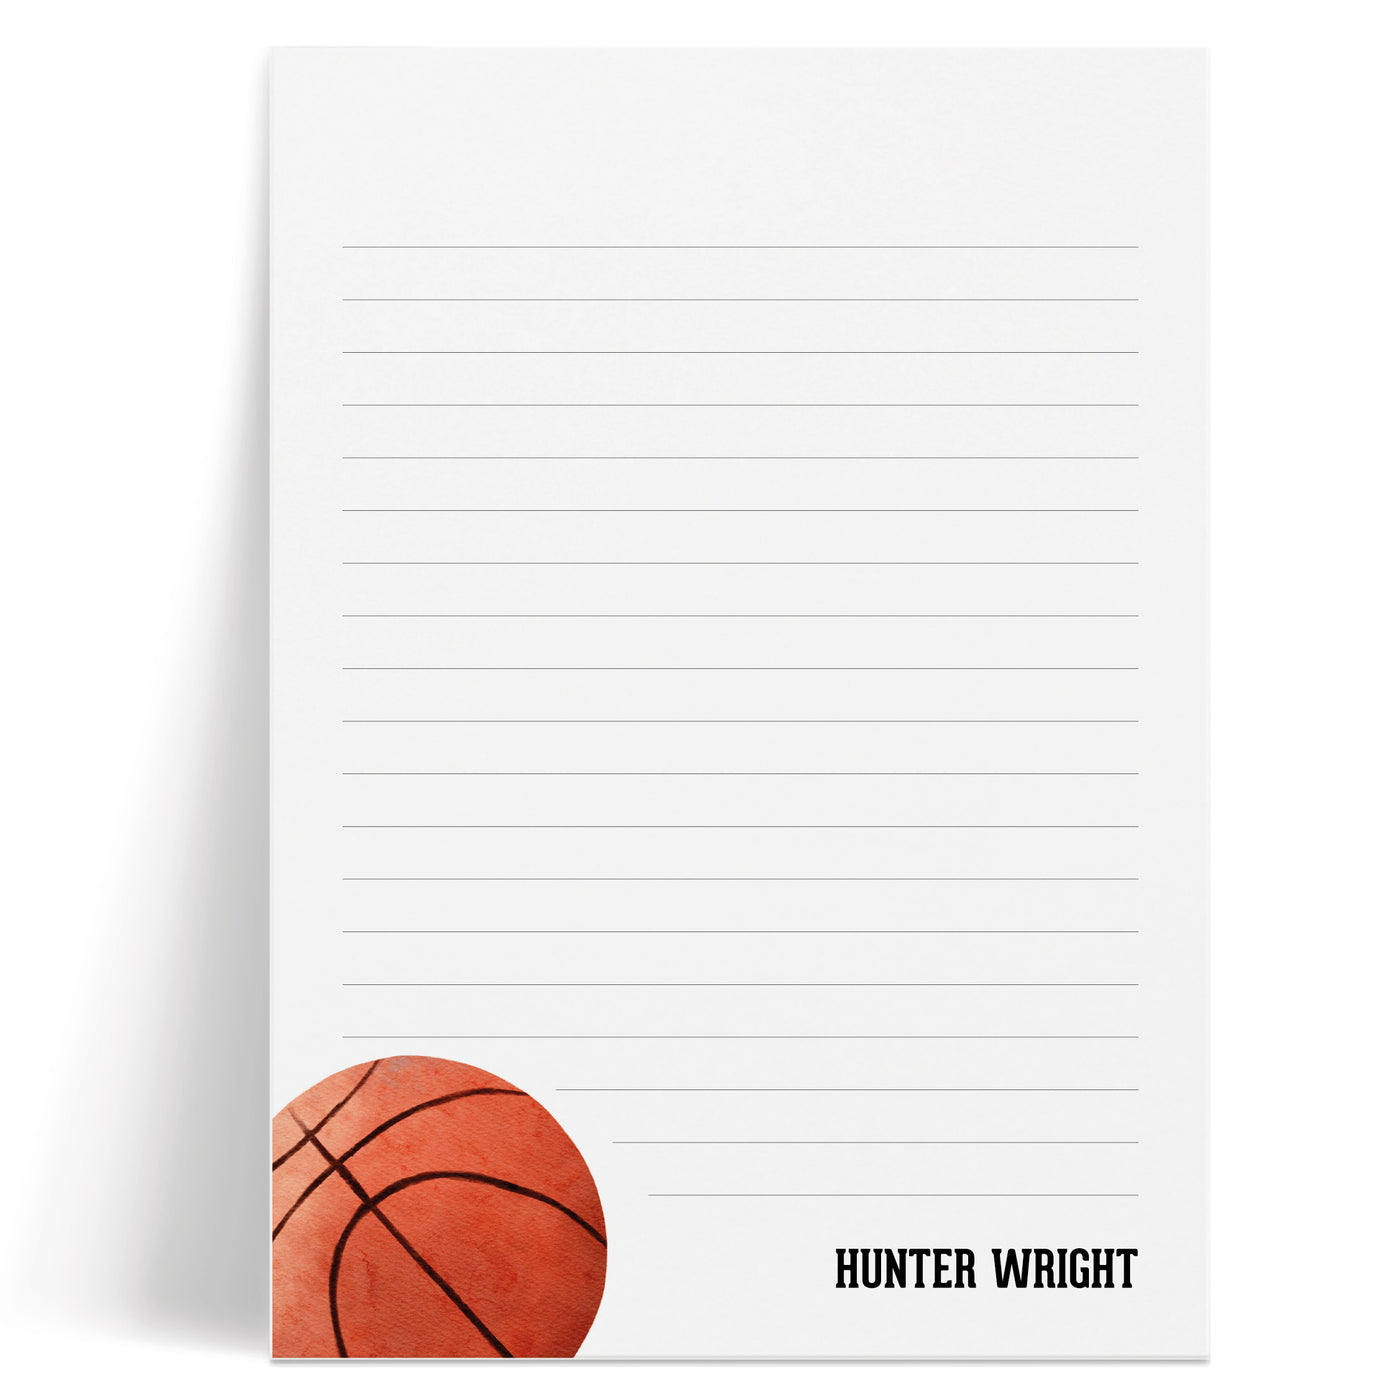 Basketball: Notepad